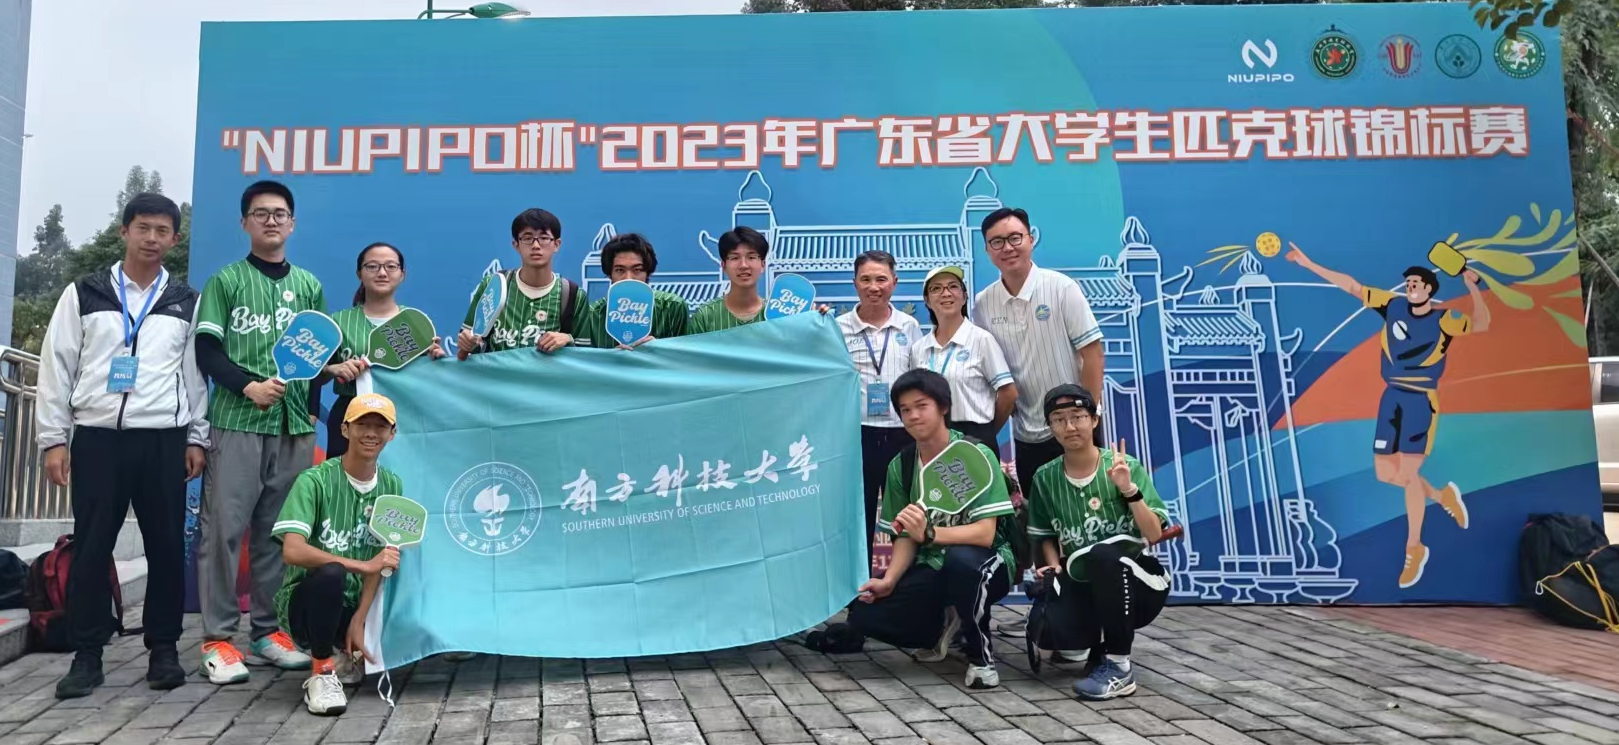 我校匹克球队首次参加广东省大学生匹克球锦标赛